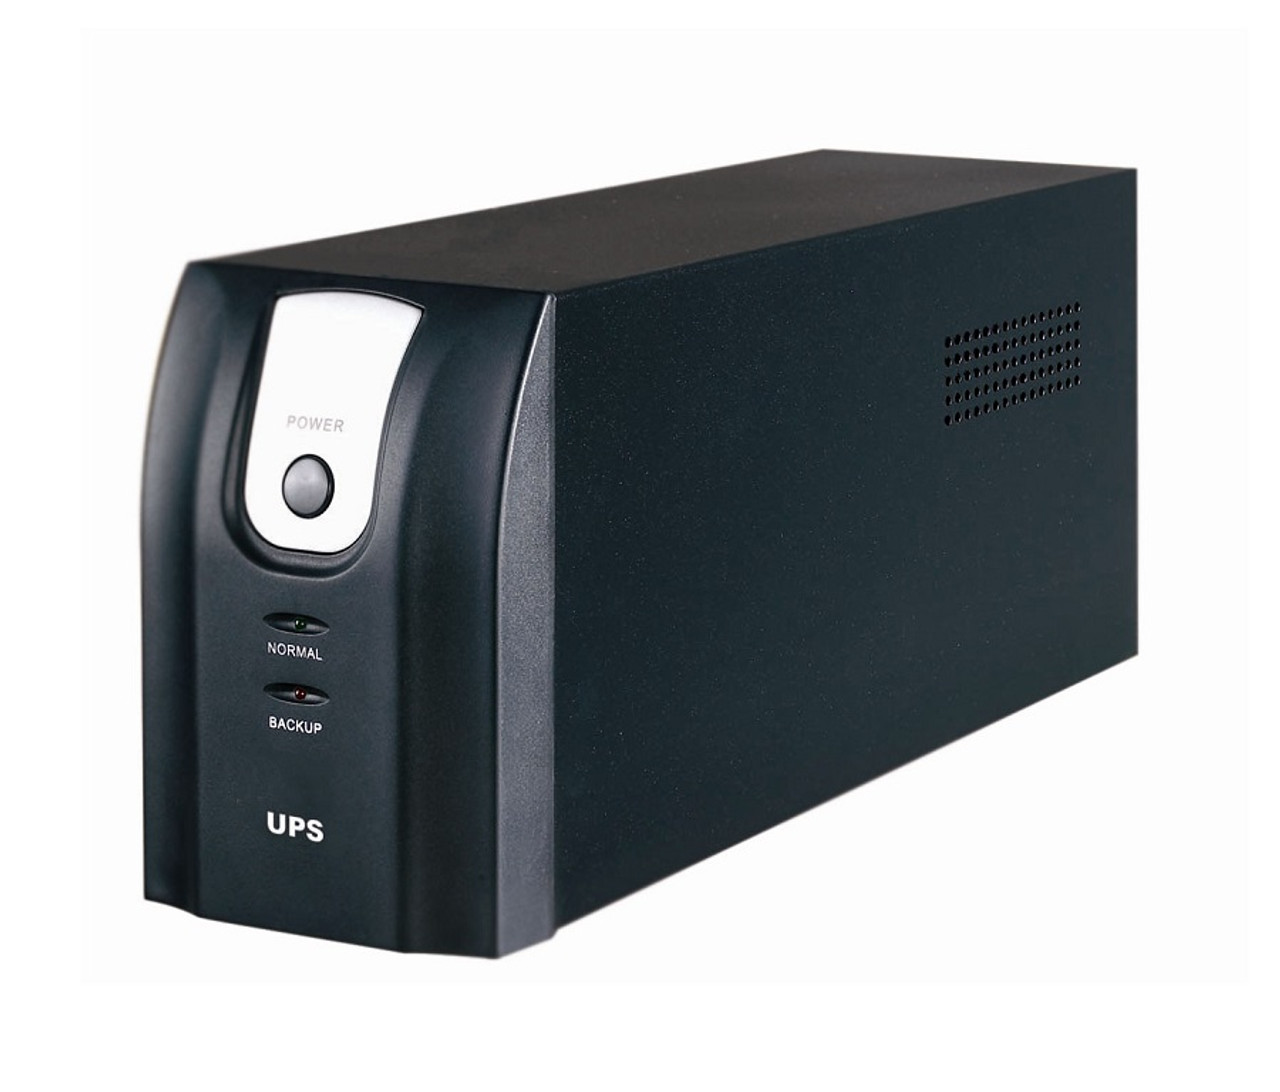 SUA3000XLI - APC Smart-UPS XL 3000VA/2700W Tower UPS